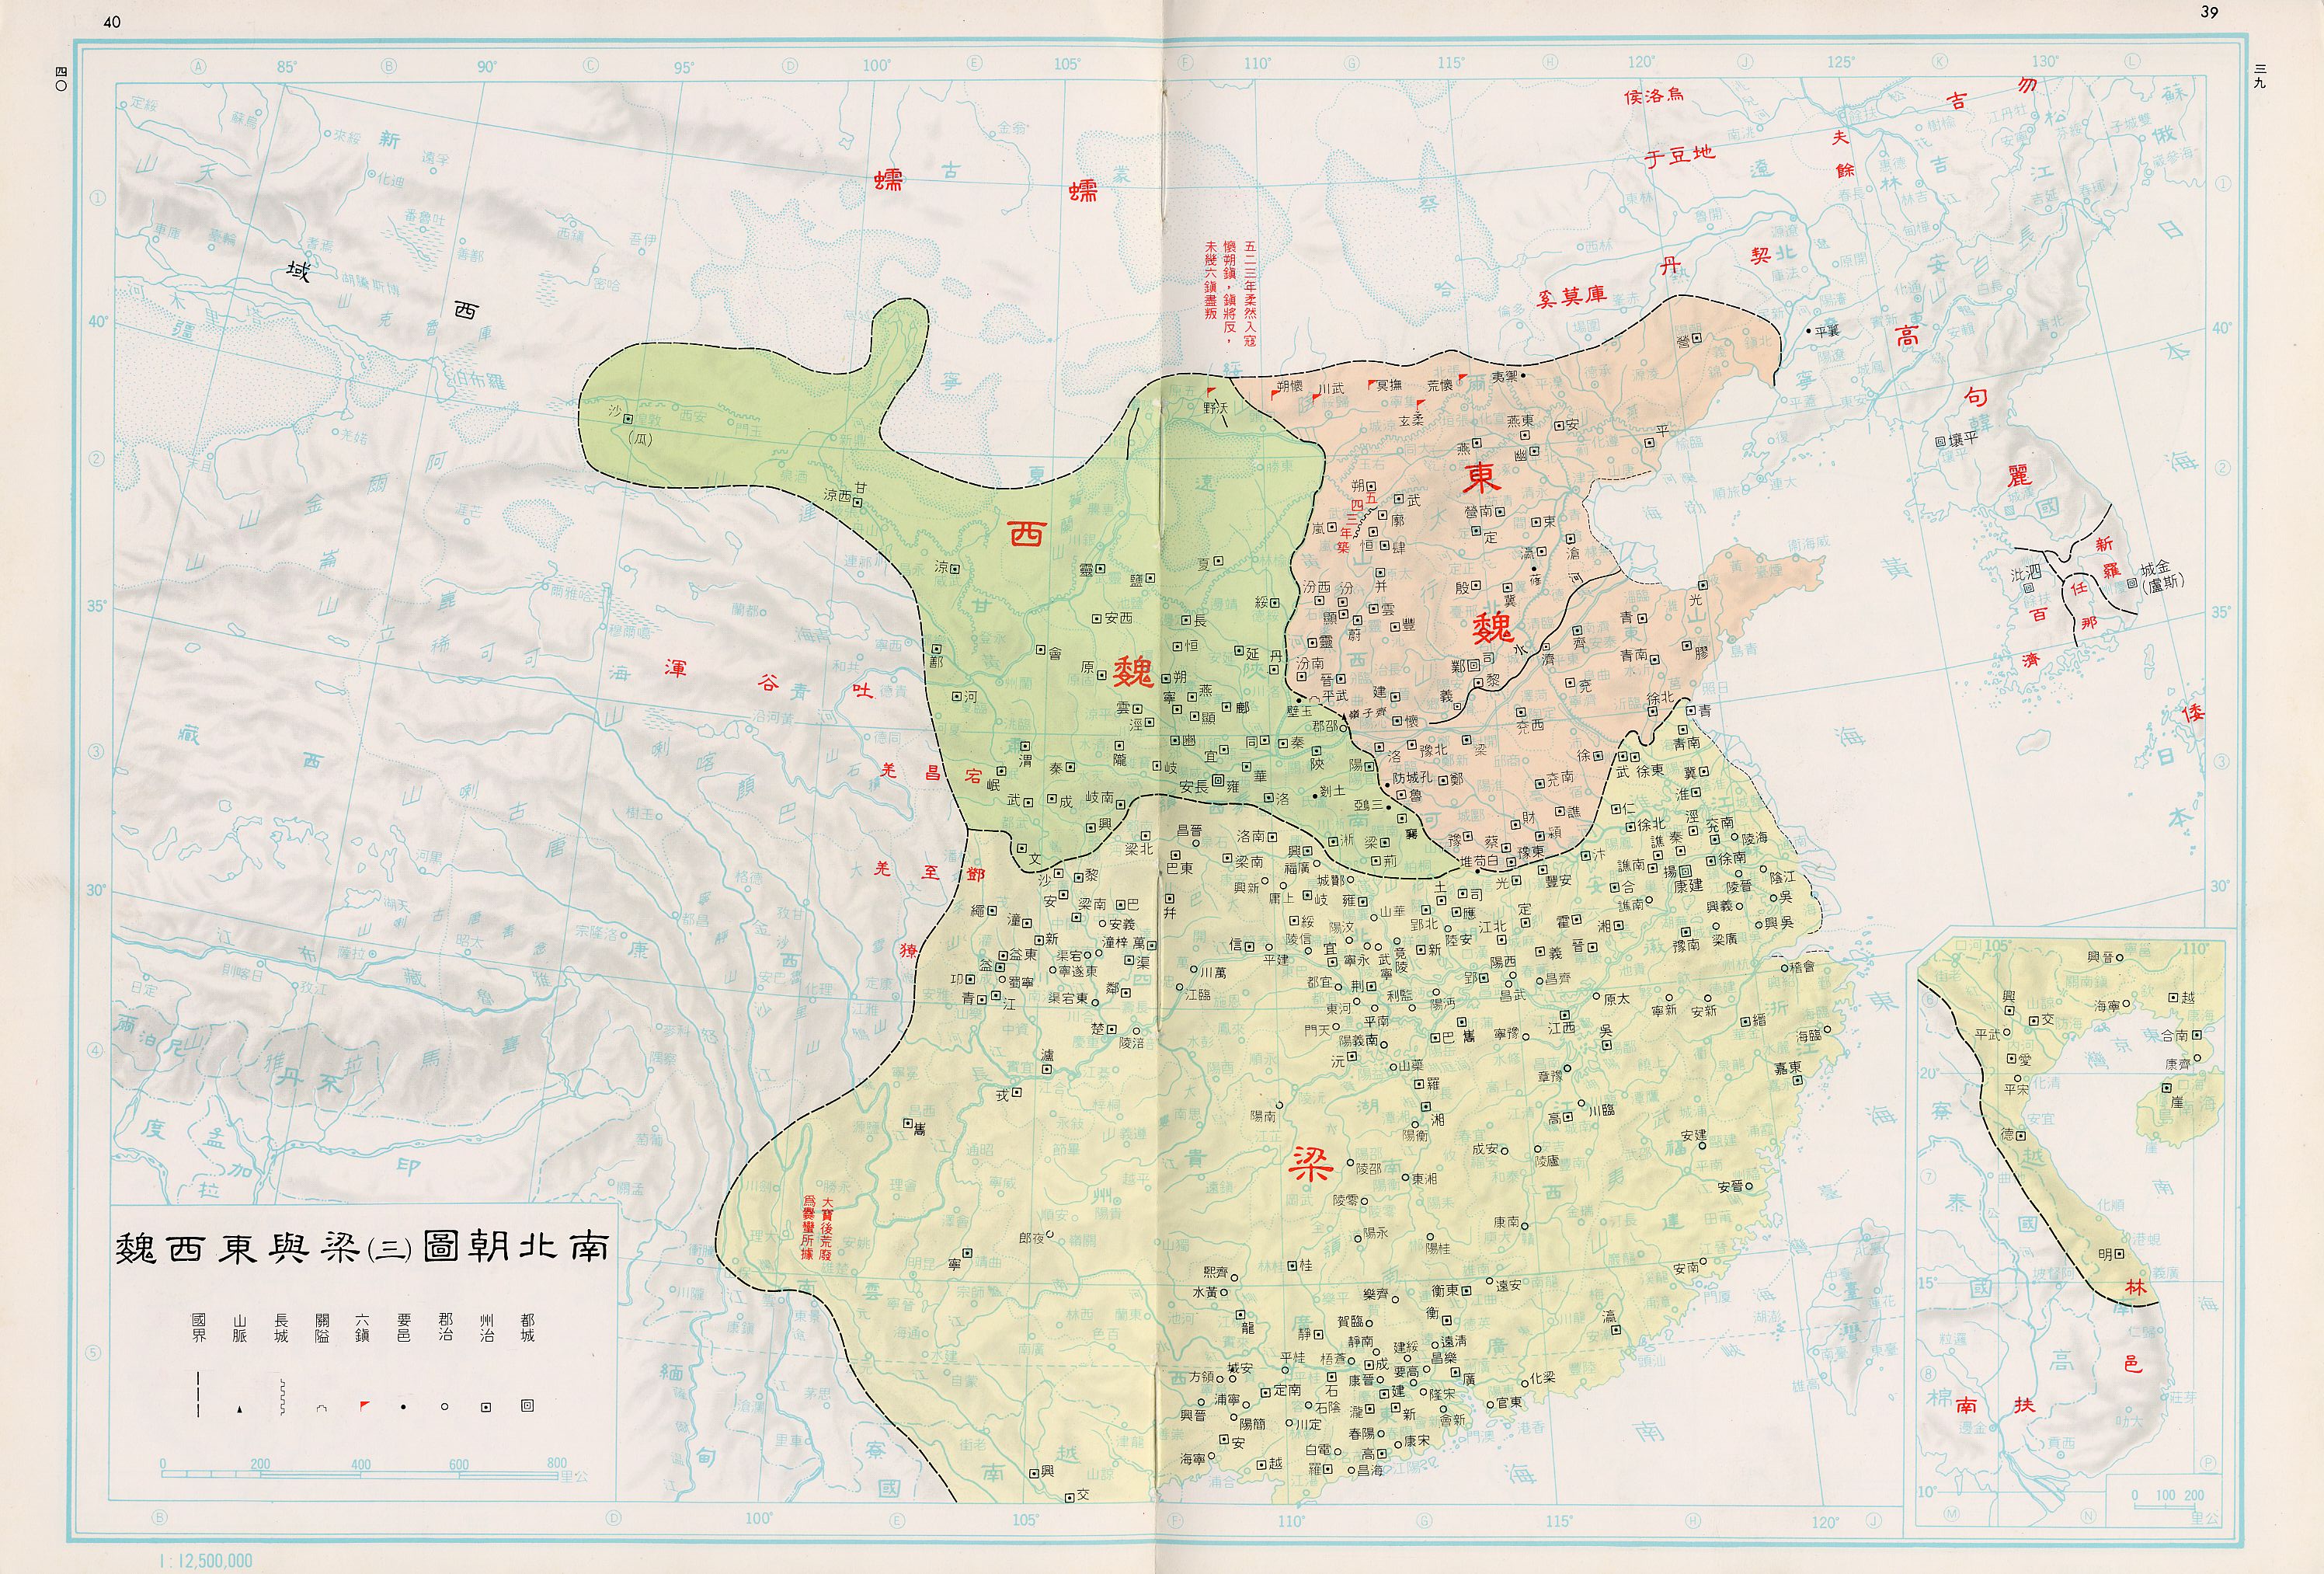 重磅资料 :中国历史地图(超清 )!